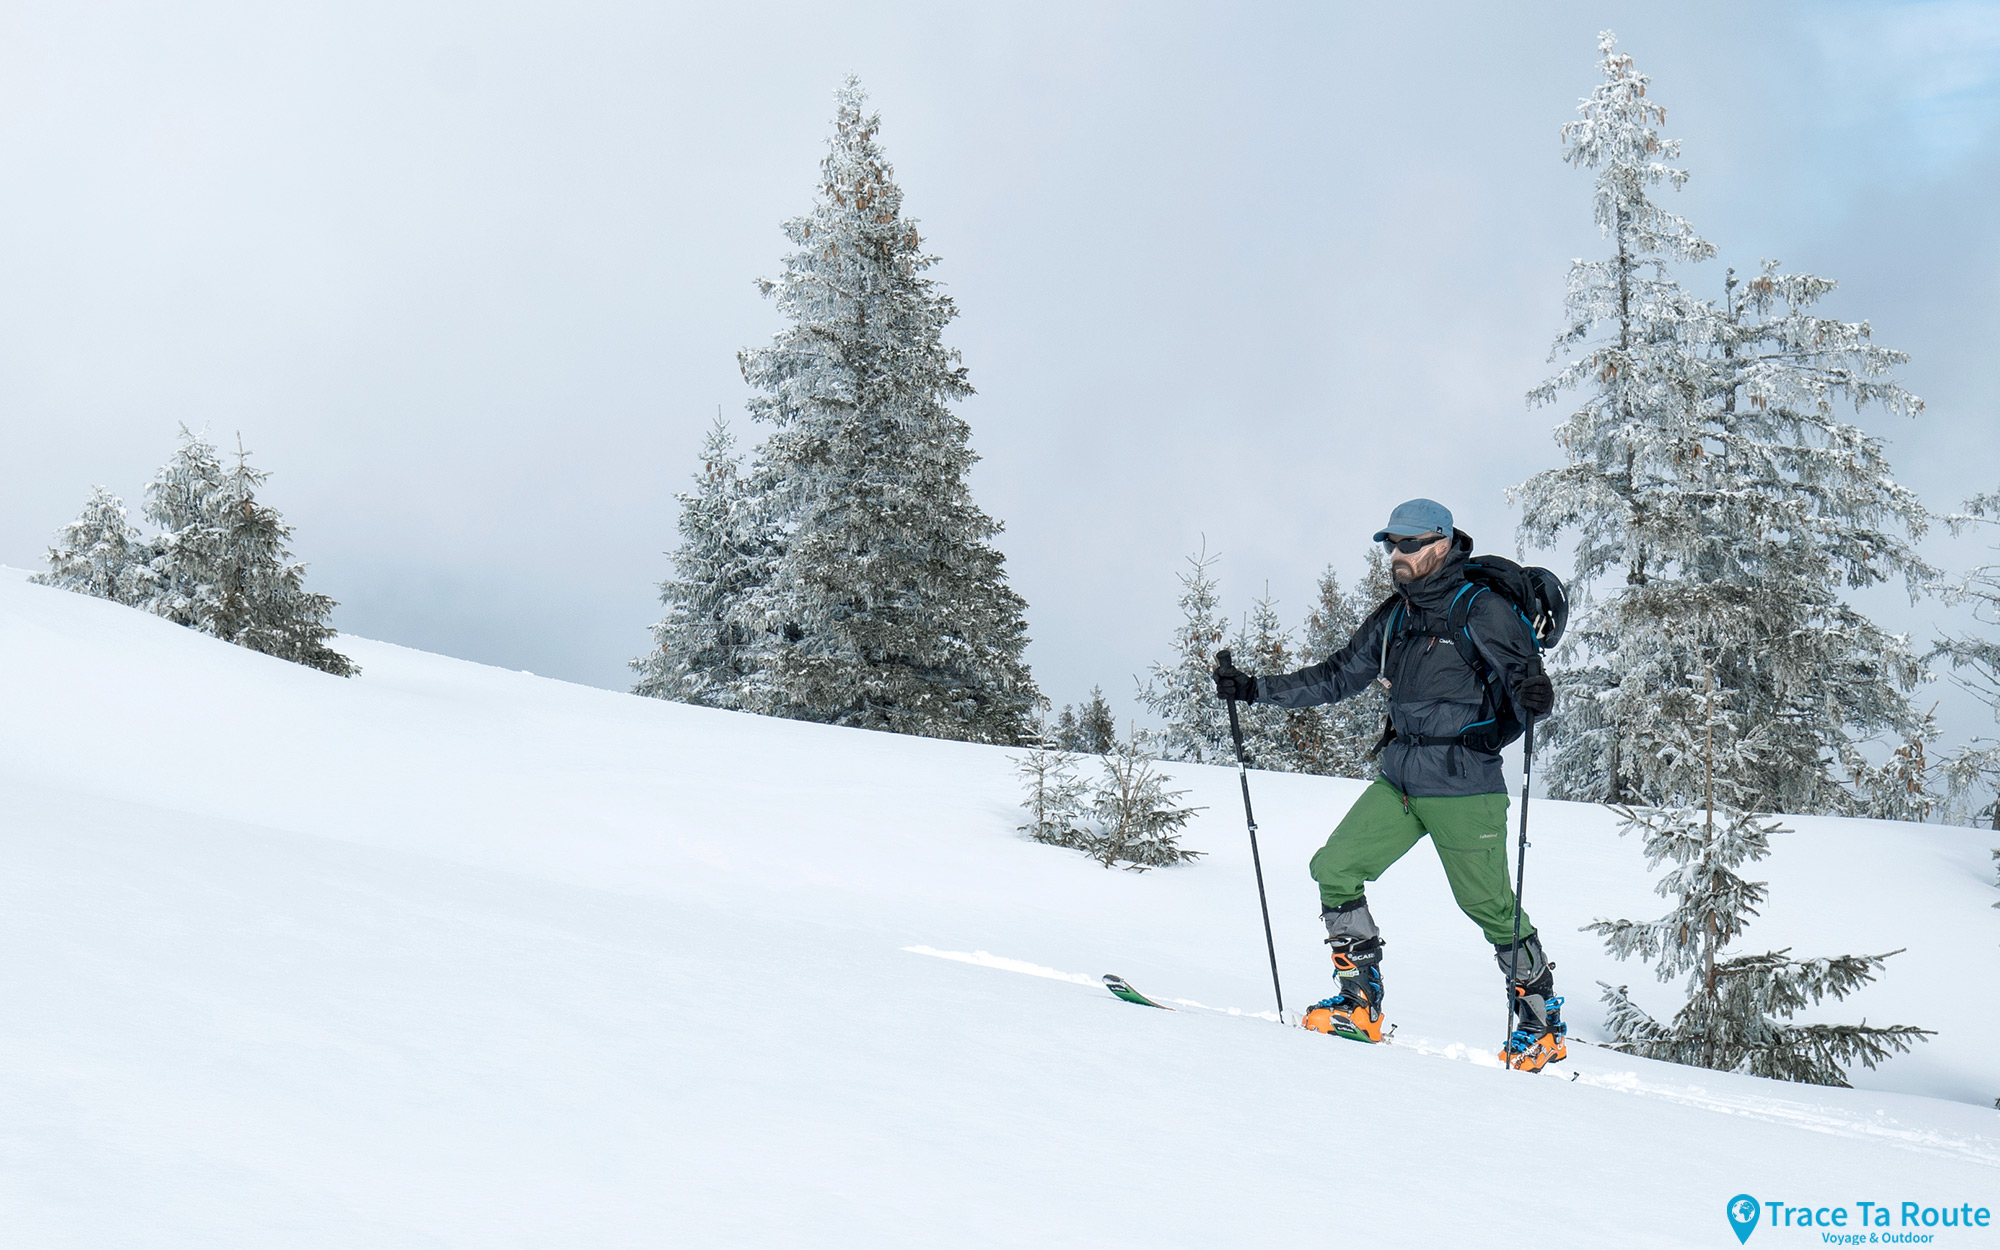 ALLEVARD - Noir - Homme Veste de ski stretch et technique